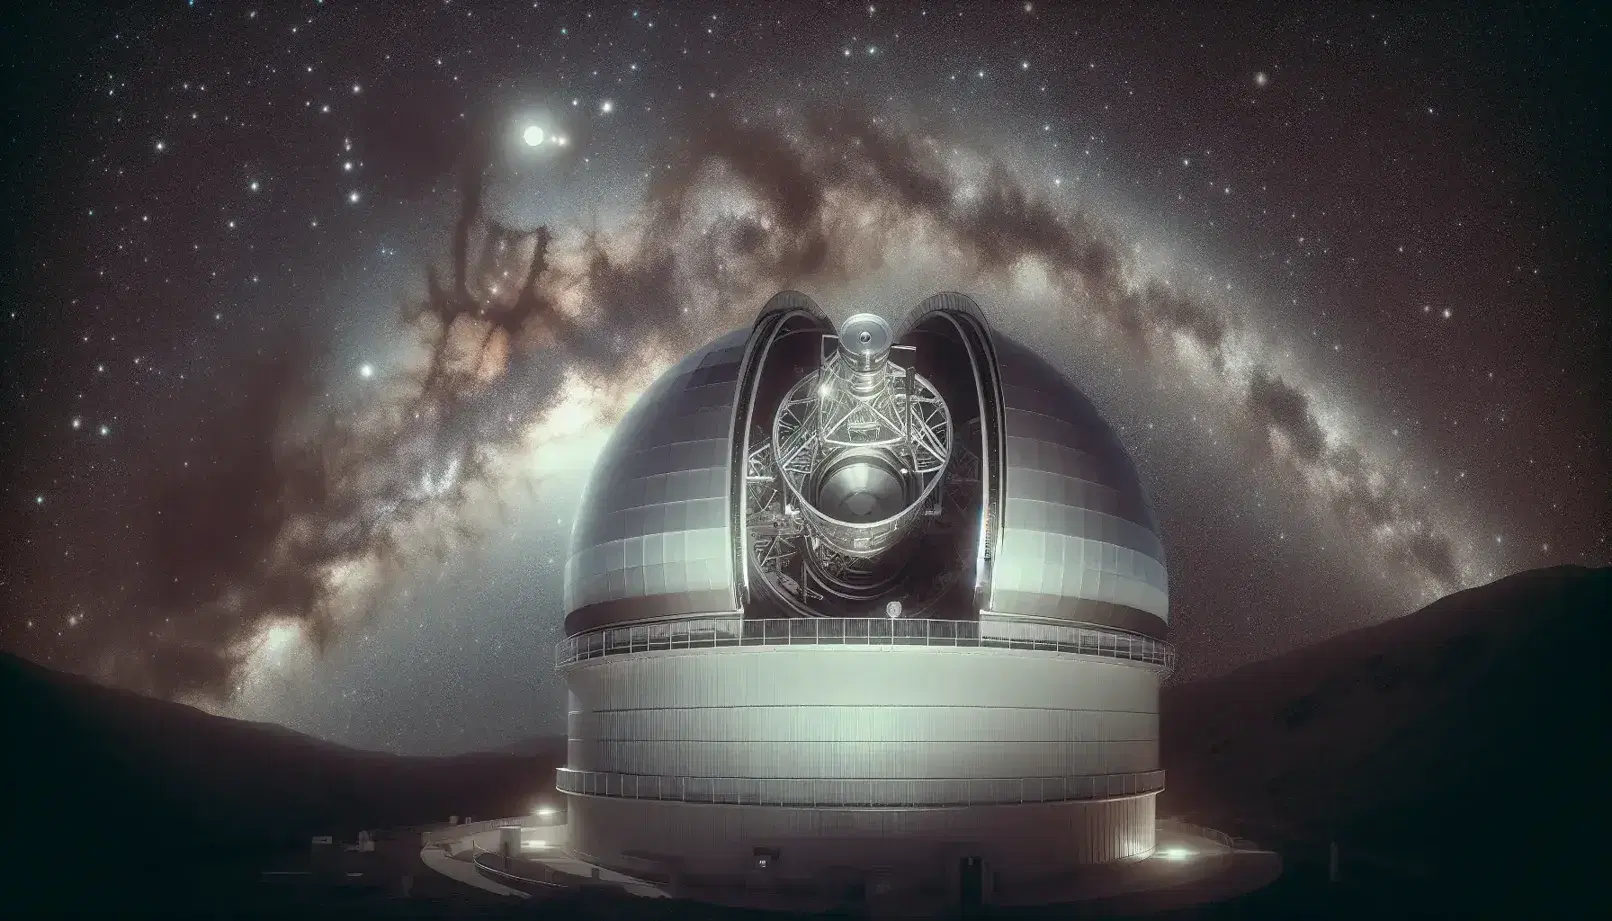 Telescopio reflector en observatorio astronómico con cúpula abierta bajo cielo estrellado y Vía Láctea, alejado de la contaminación lumínica.